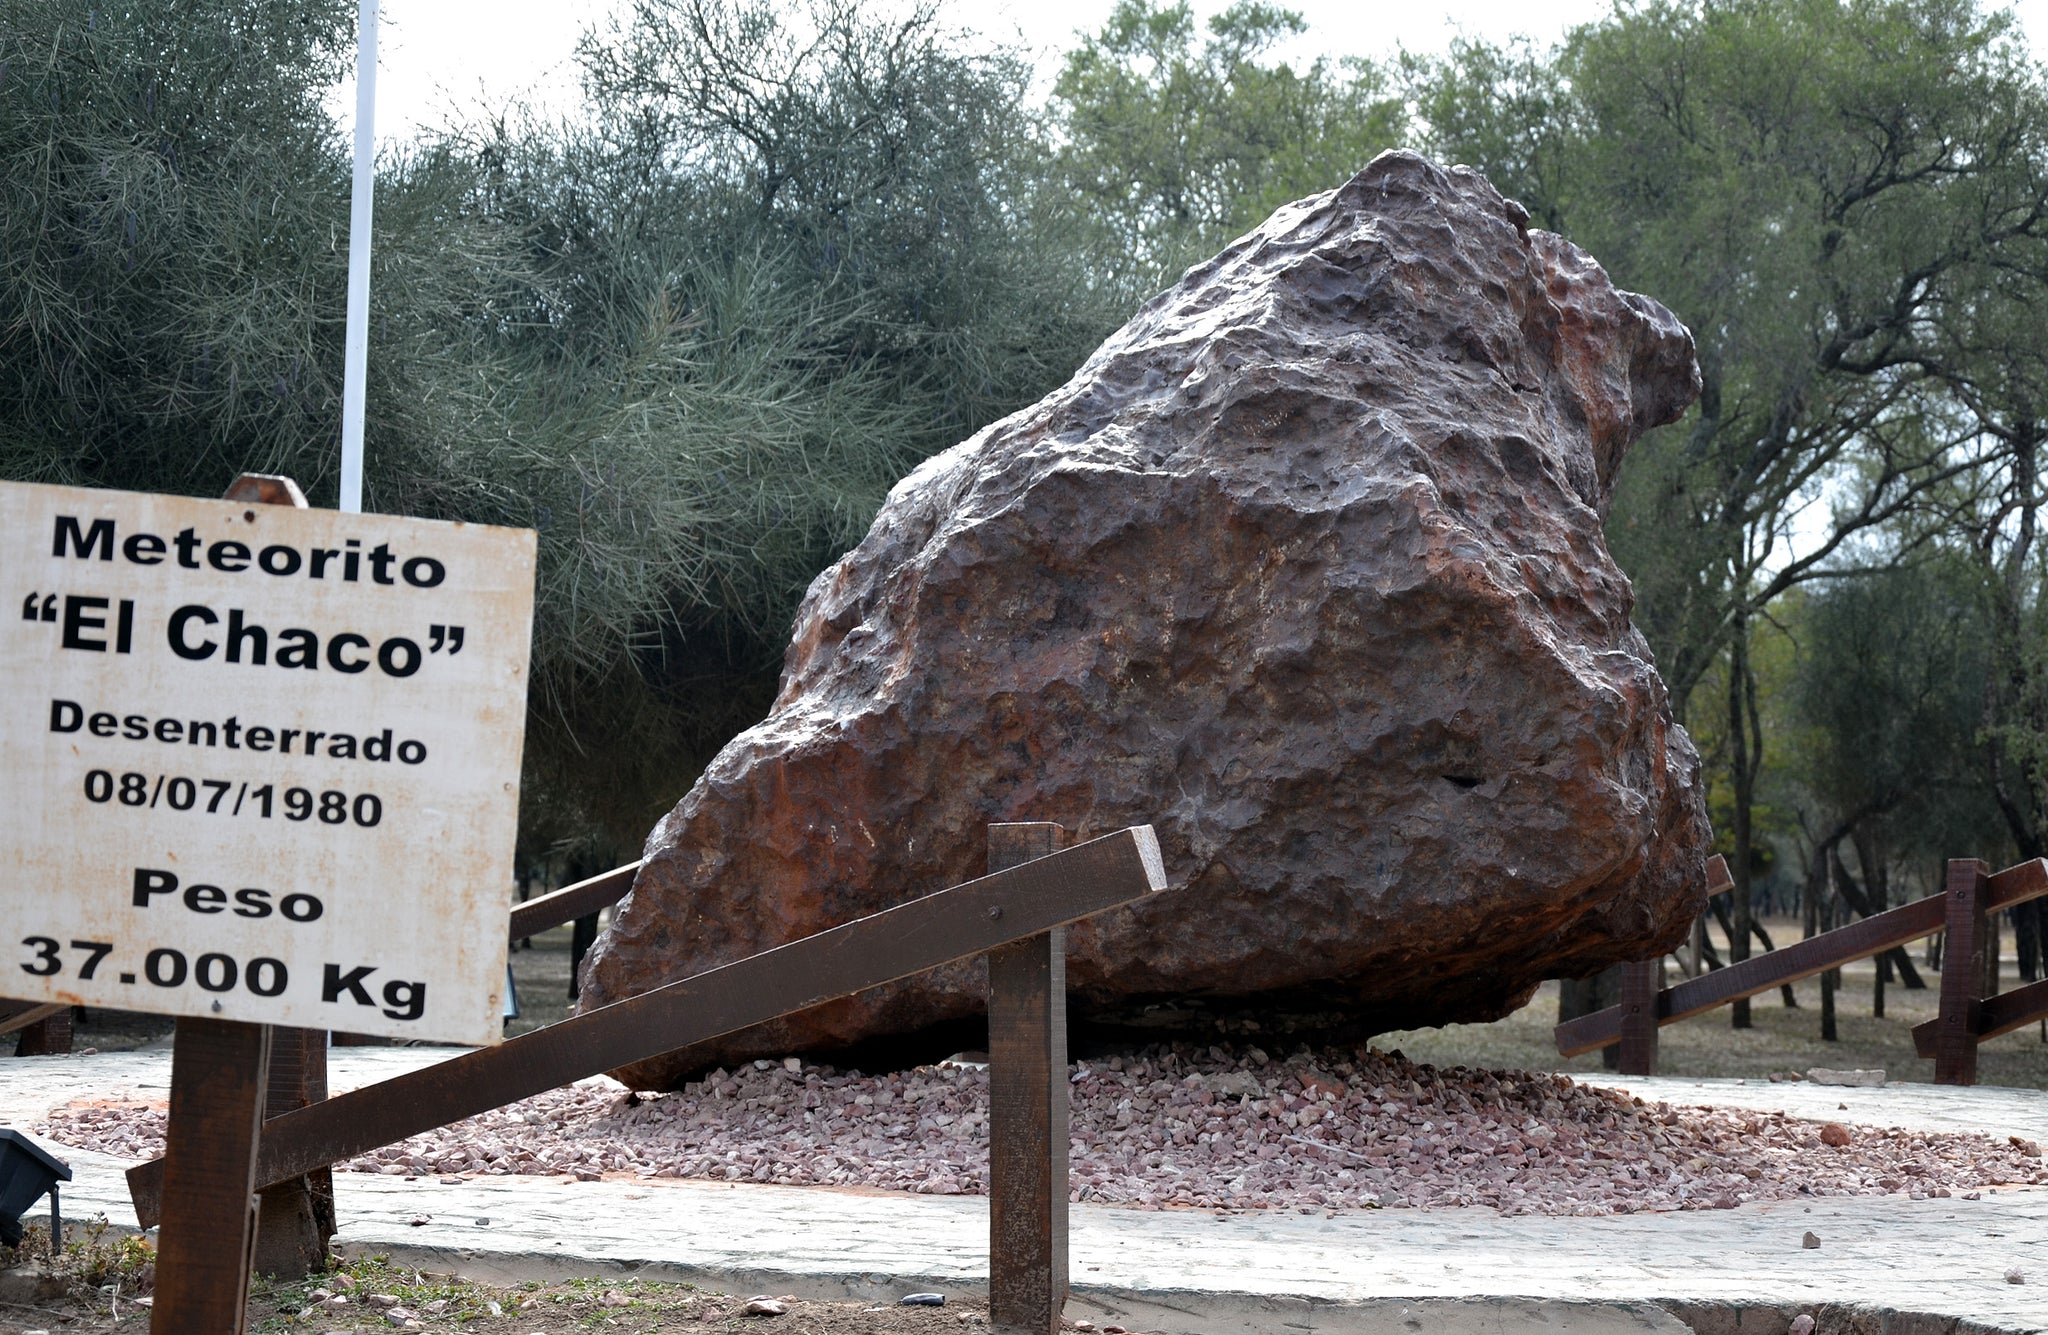 Large Campo del Cielo meteorite